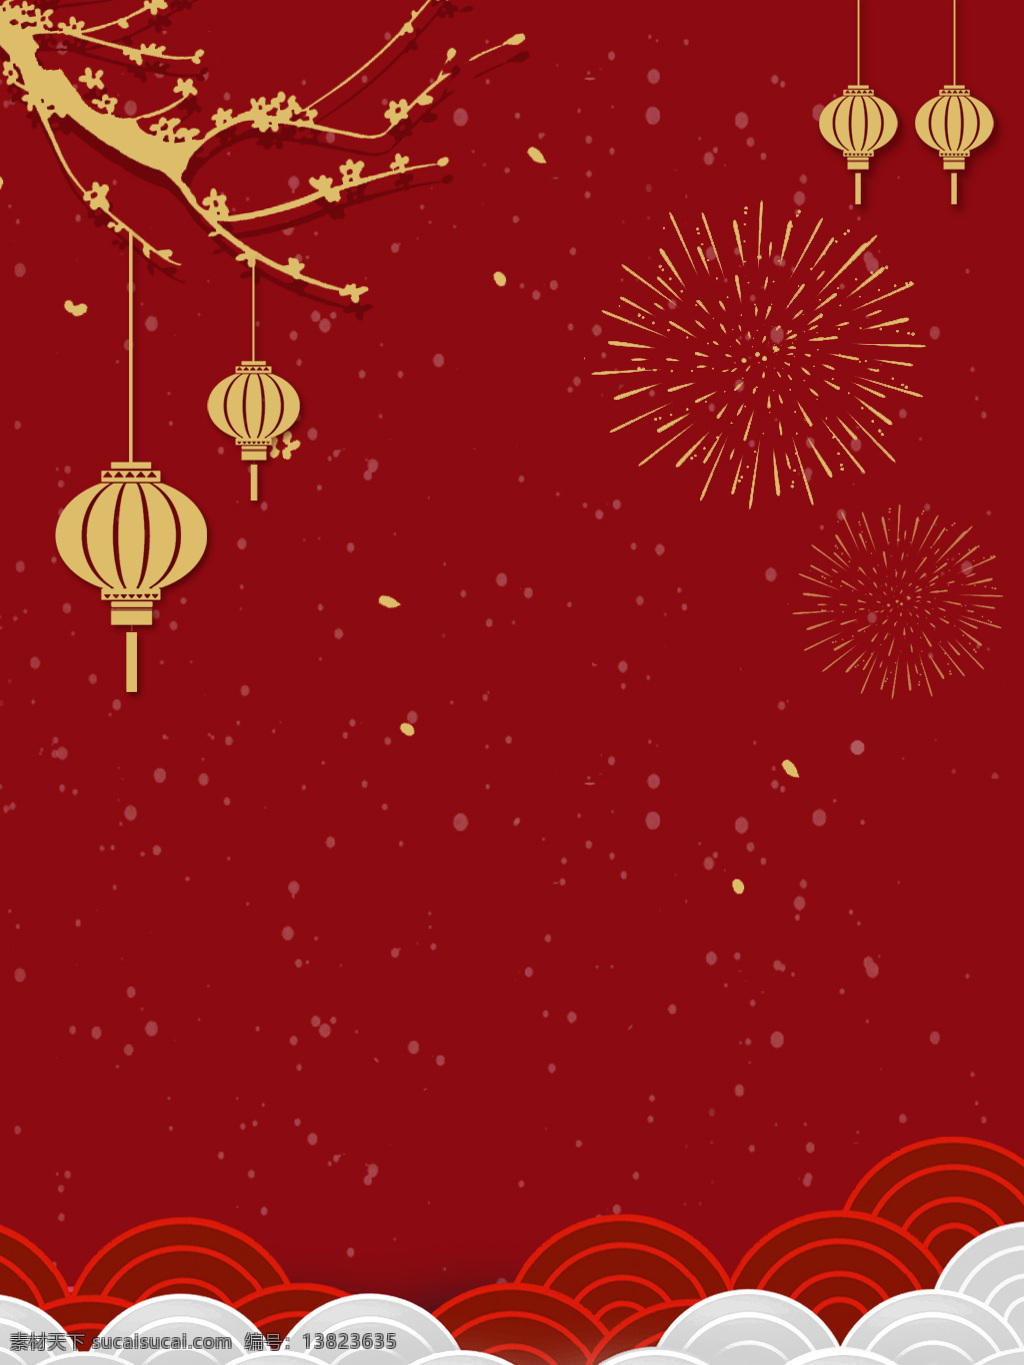 元旦 新年 红色 喜庆 烟花 背景 灯笼 广告背景 梅花树 新年素材 底纹边框 背景底纹